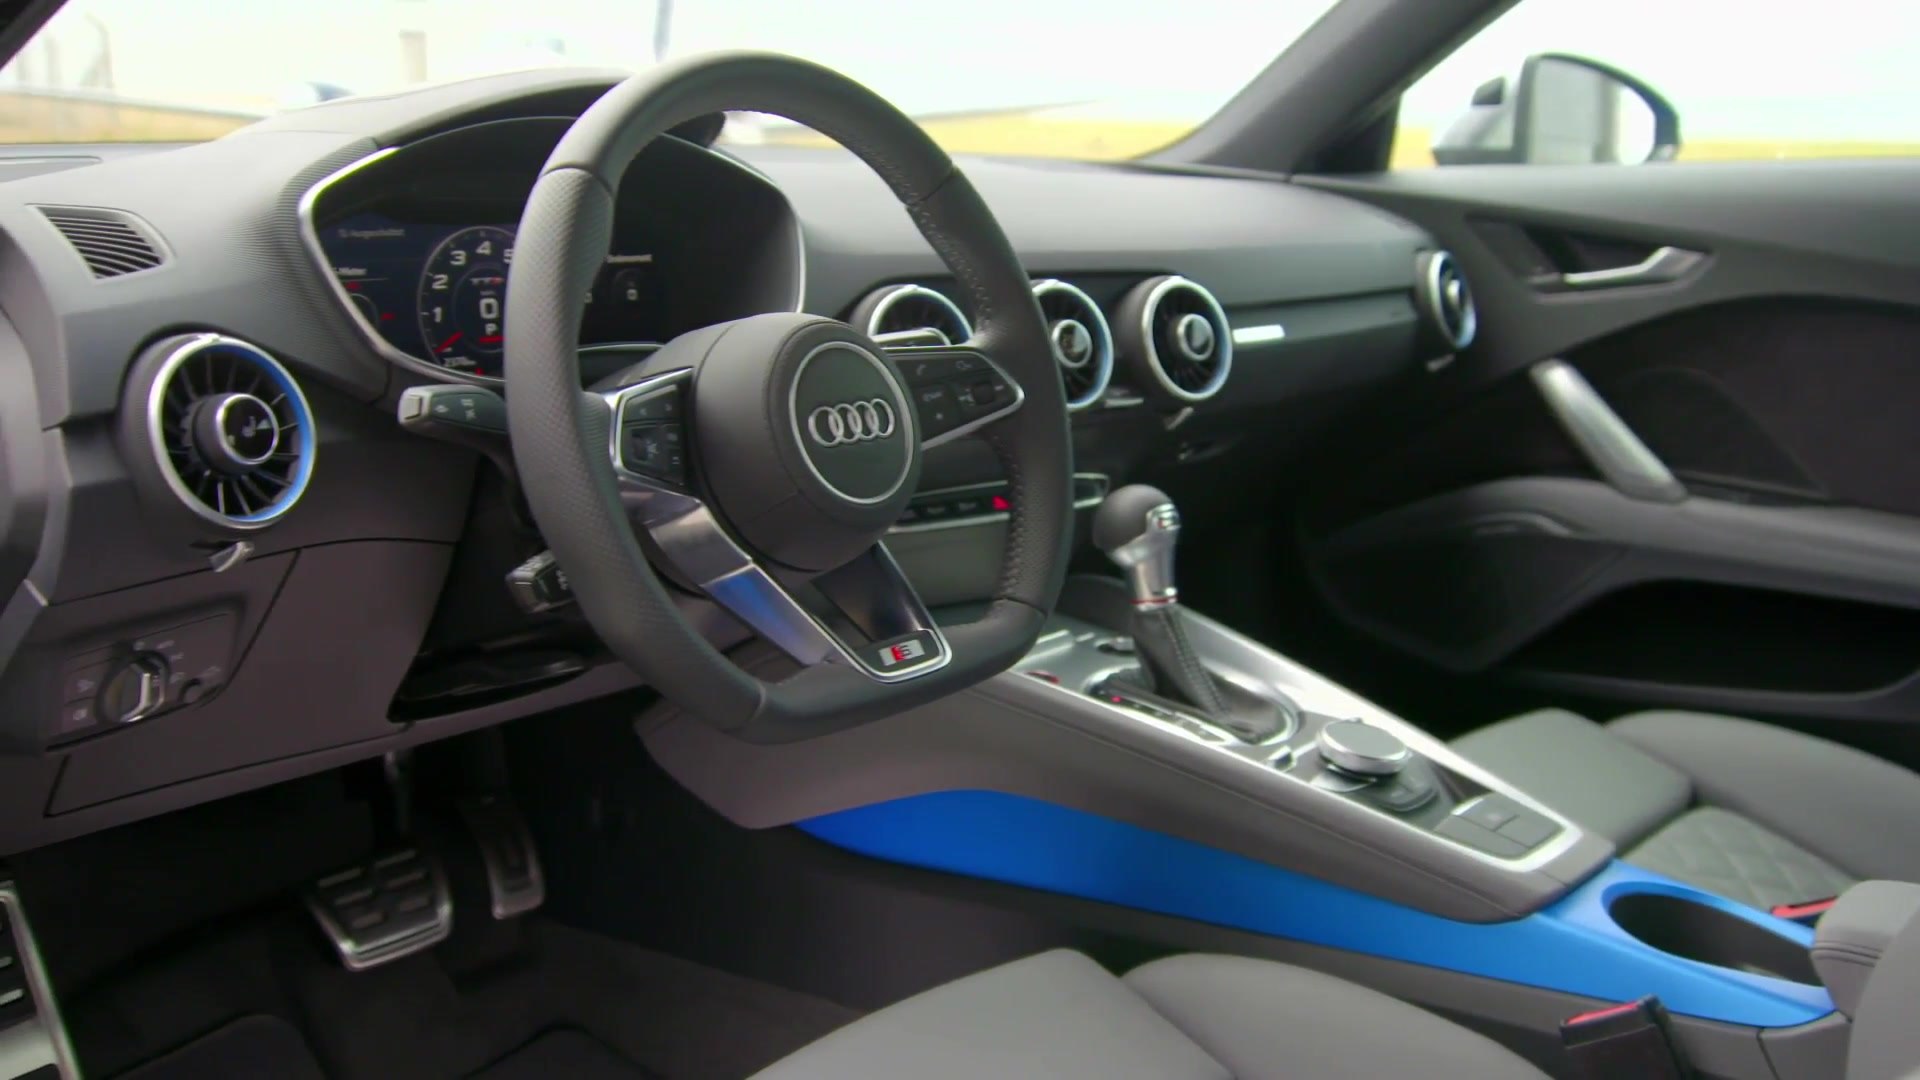 Audi Tts Interior Design In Turbo Blue